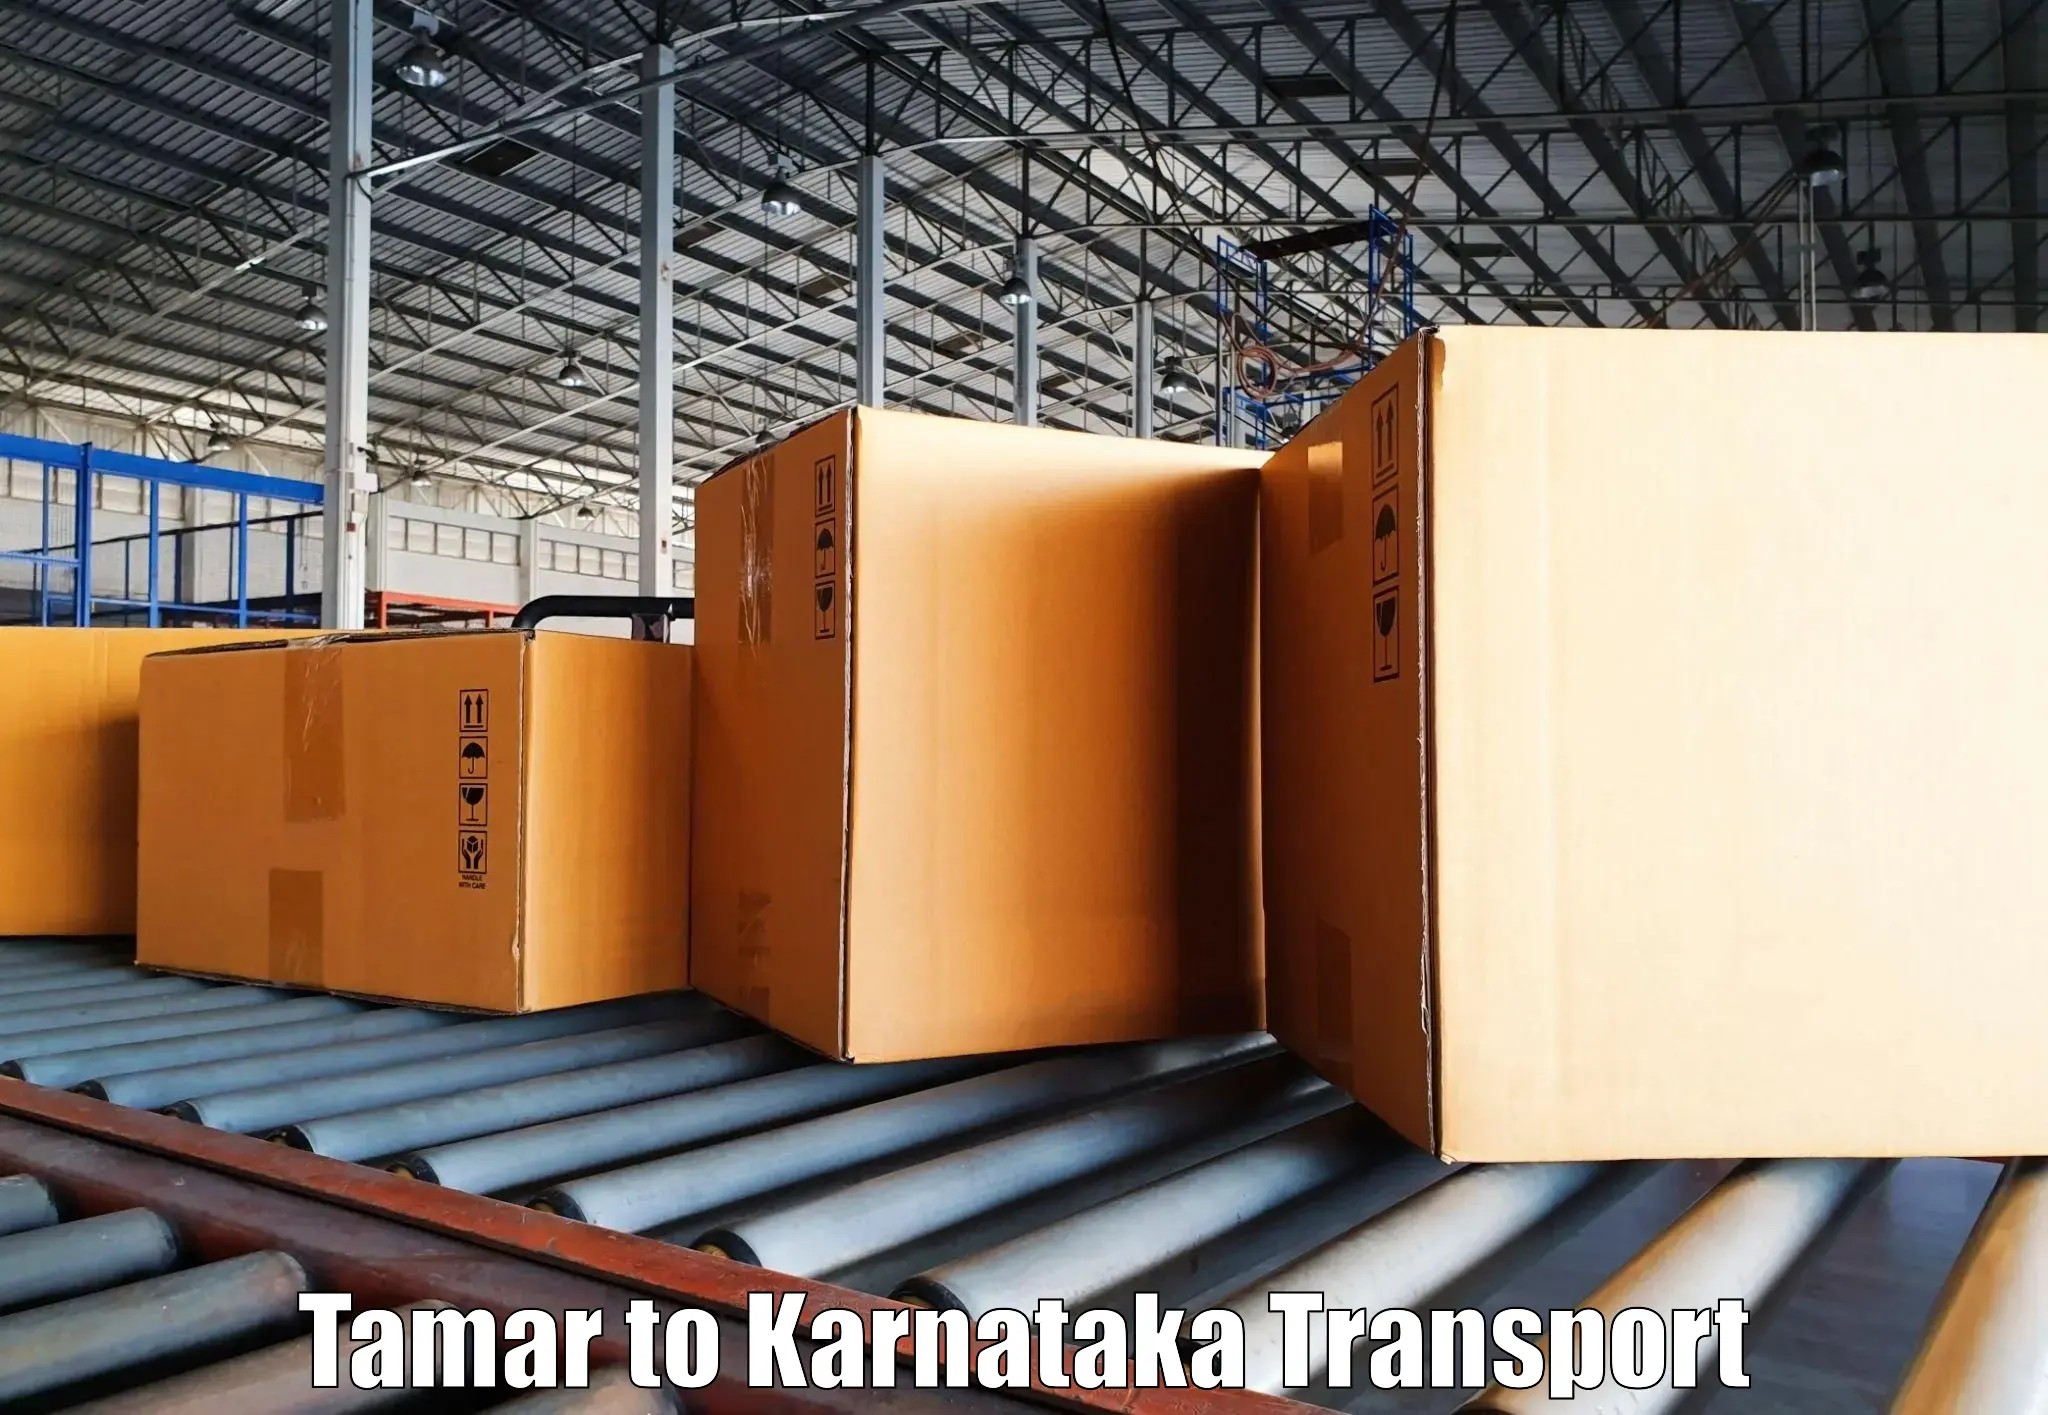 Daily transport service Tamar to Karkala